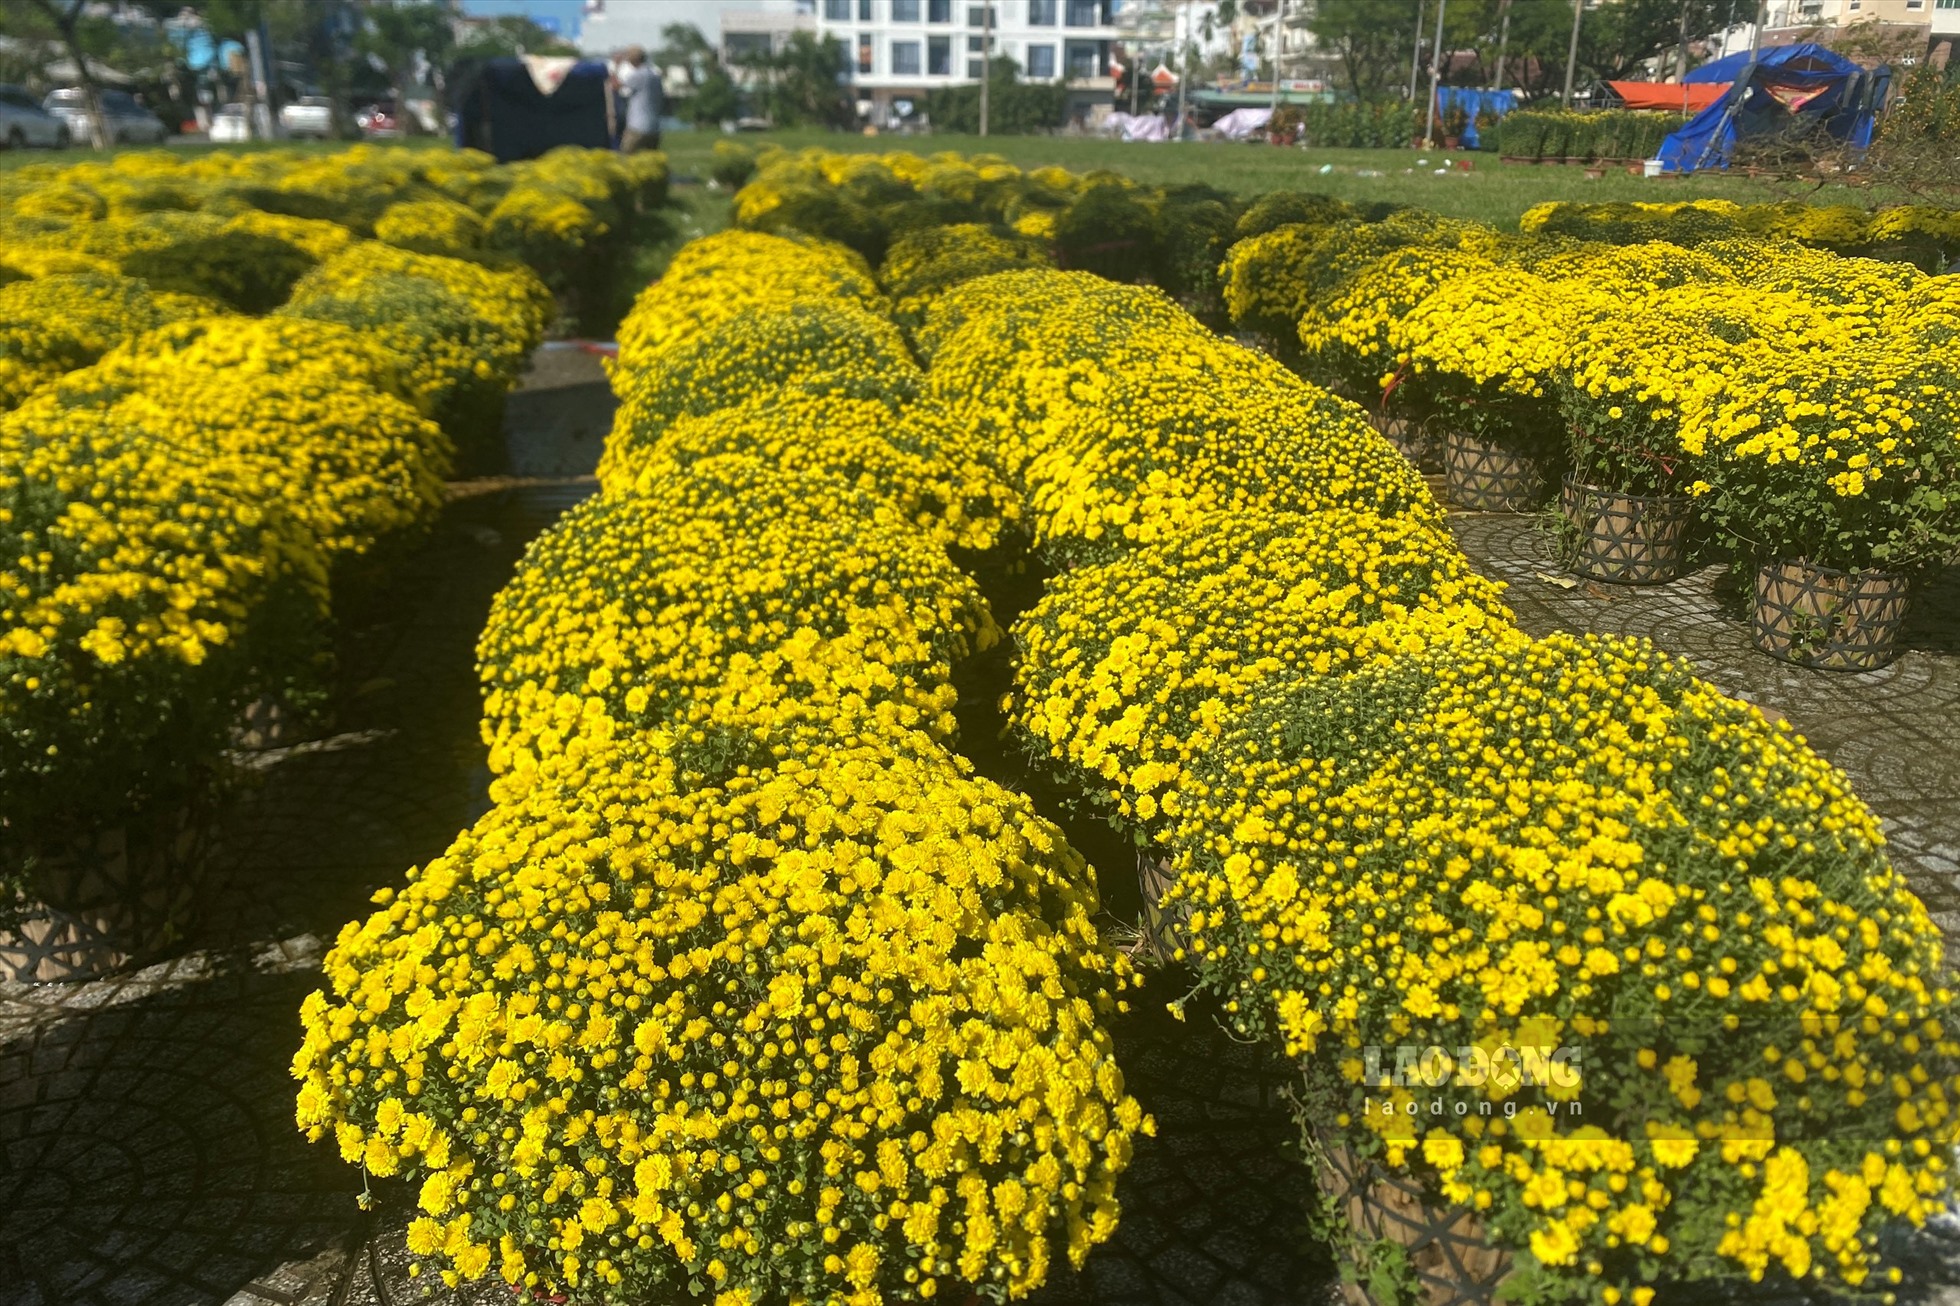 Vỉa hè đường 30 Tháng 4 giao Núi Thành, lượng lớn cúc mâm xôi được “trình làng” thị trường hoa Tết Đà Nẵng.